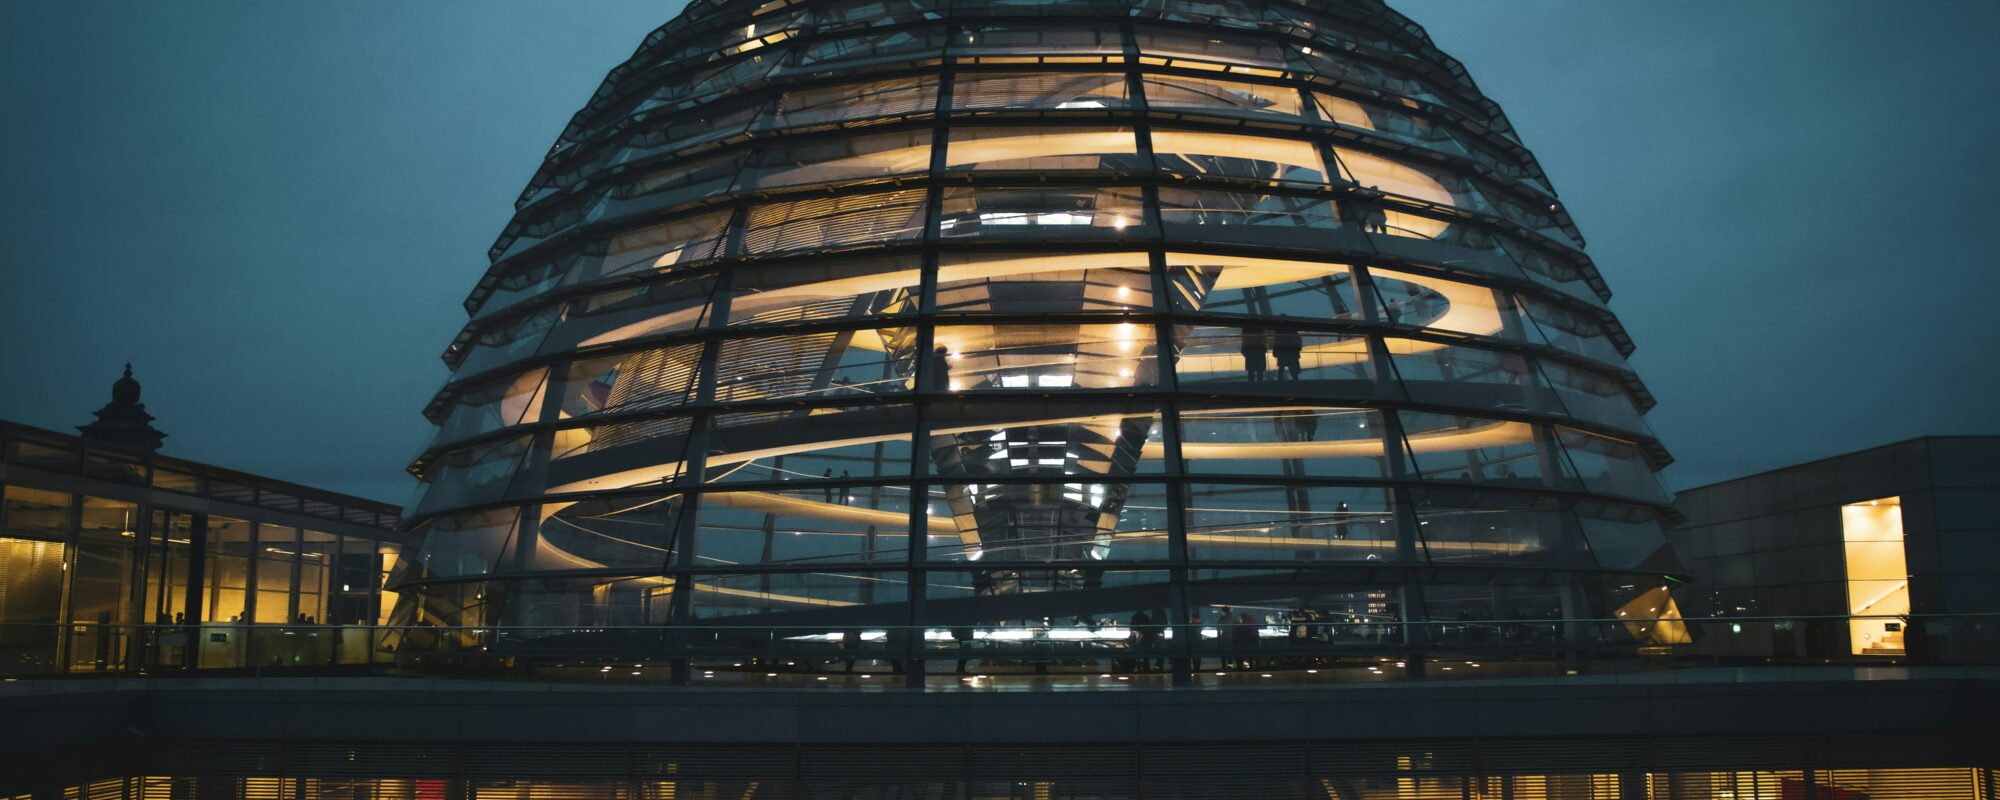 Kuppel des Reichstagsgebäudes am Abend